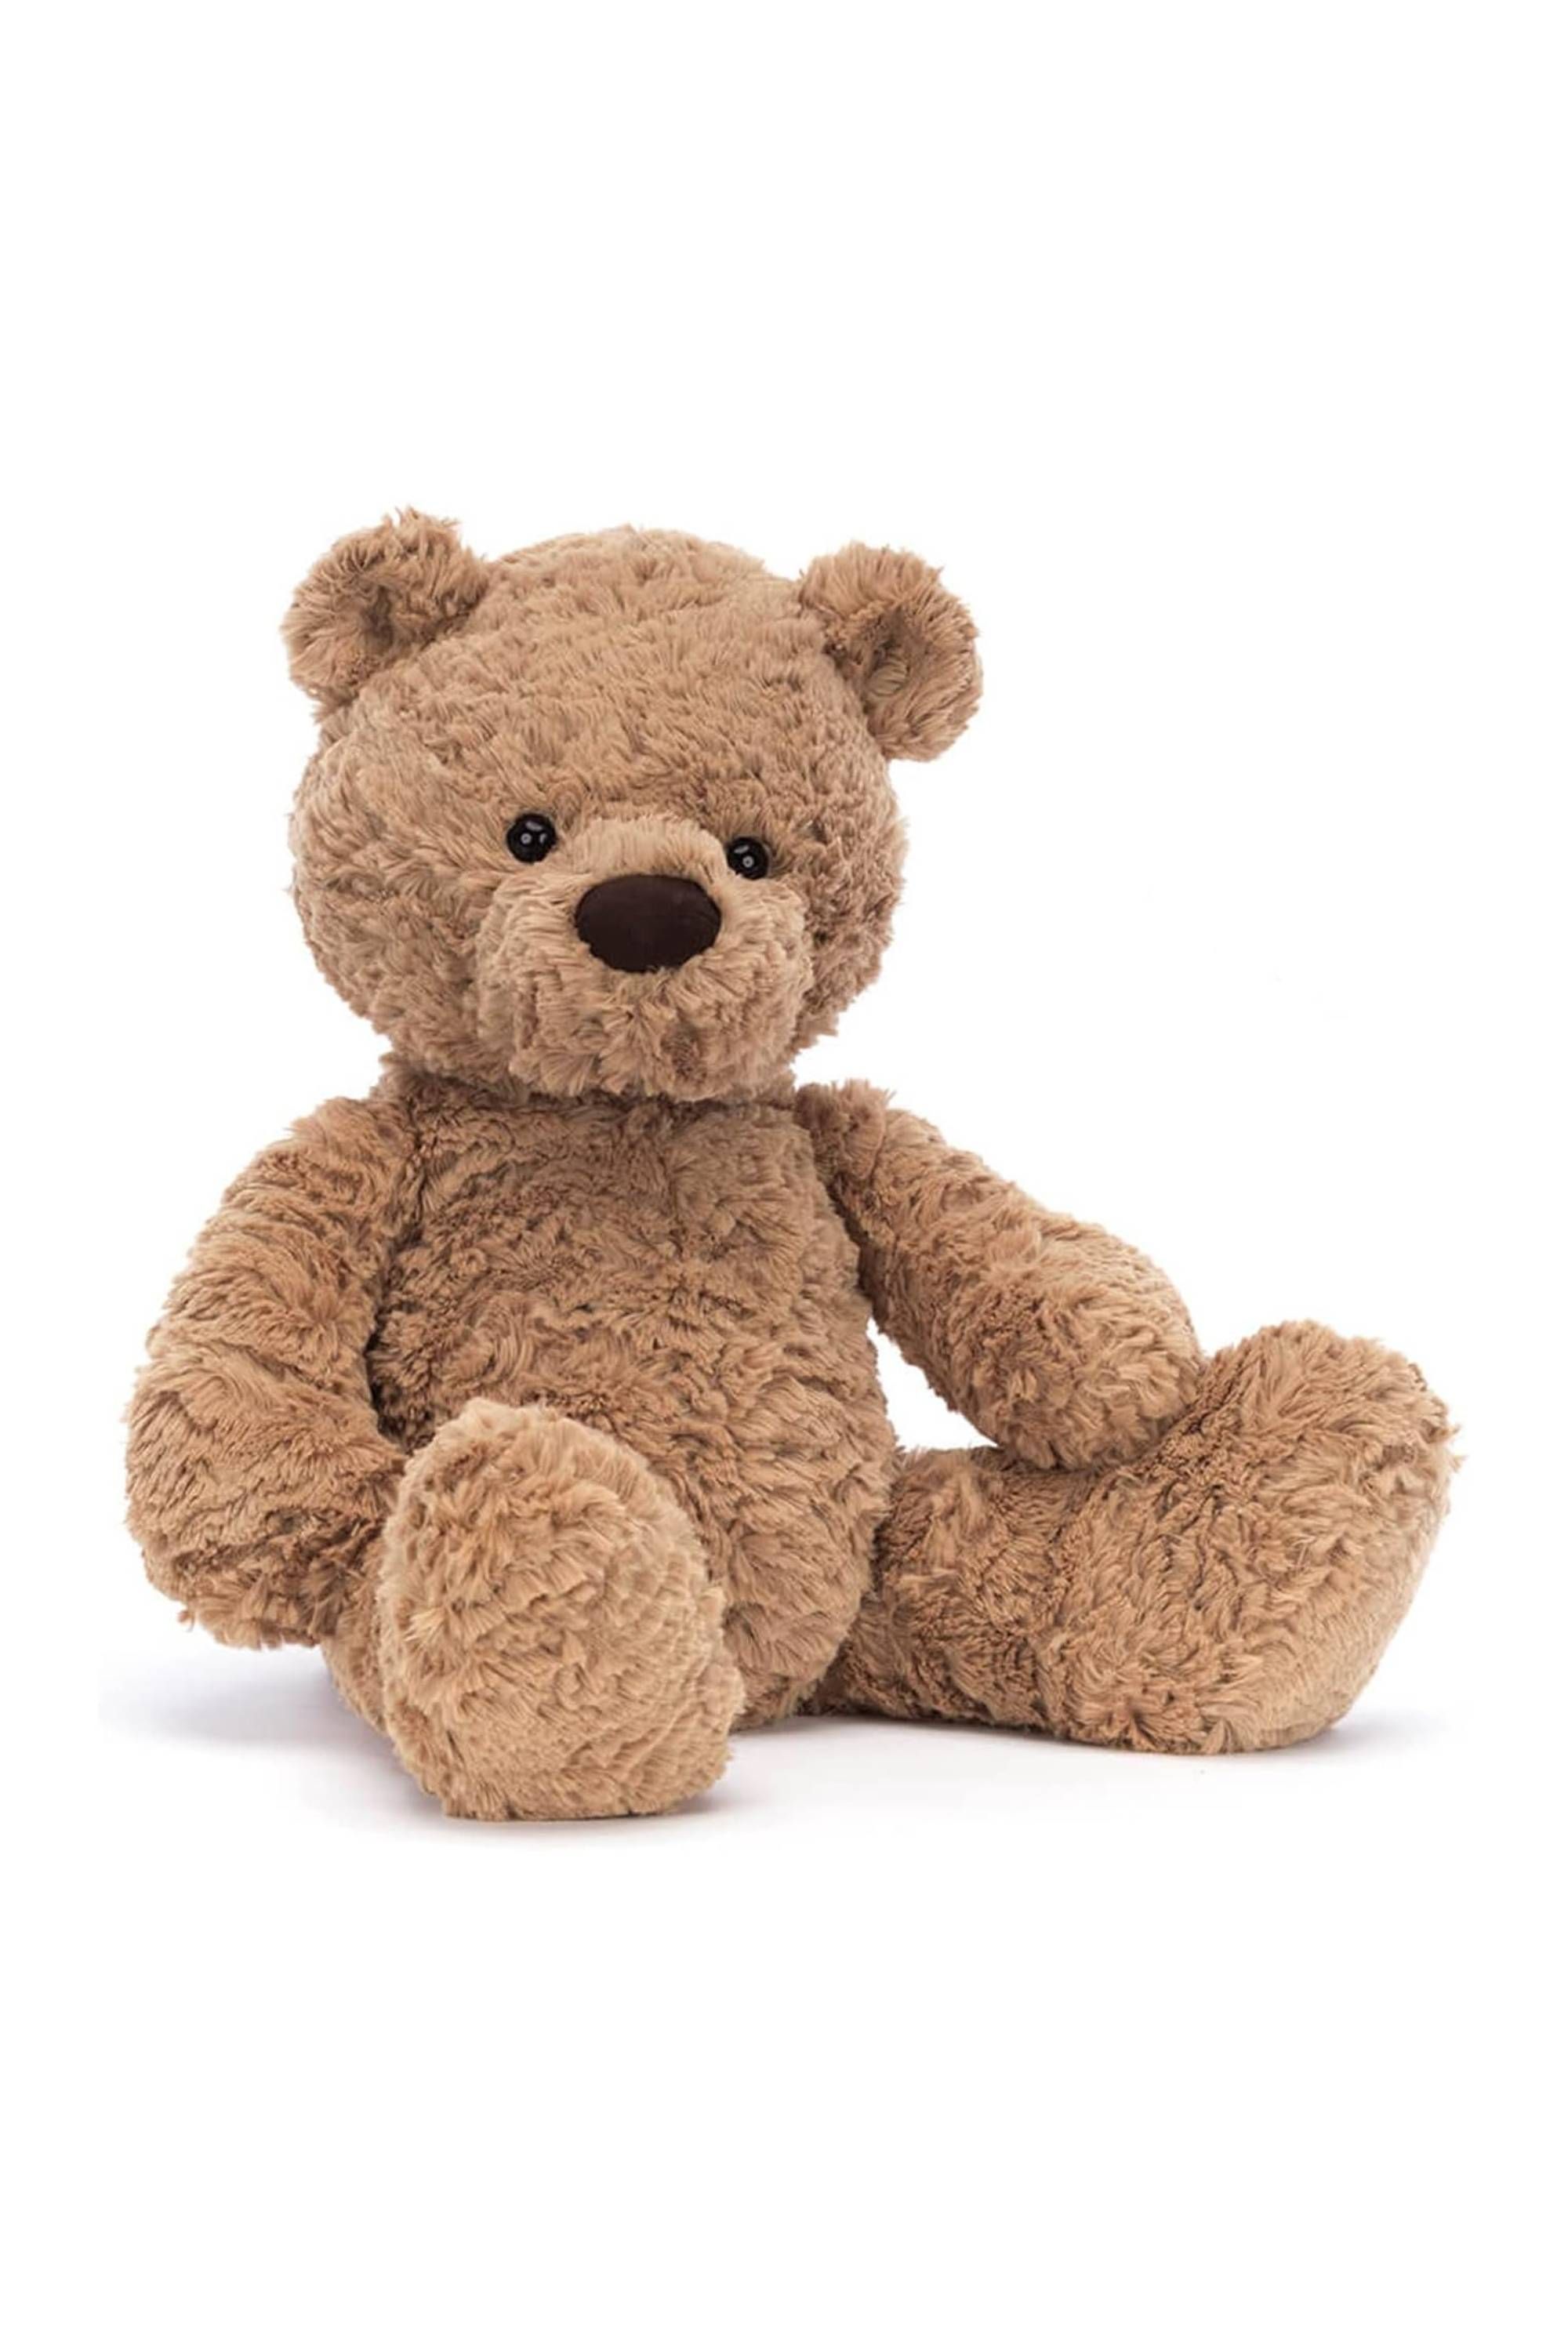 The new Jellycat Bashful Luxe - Stonegate Teddy Bears